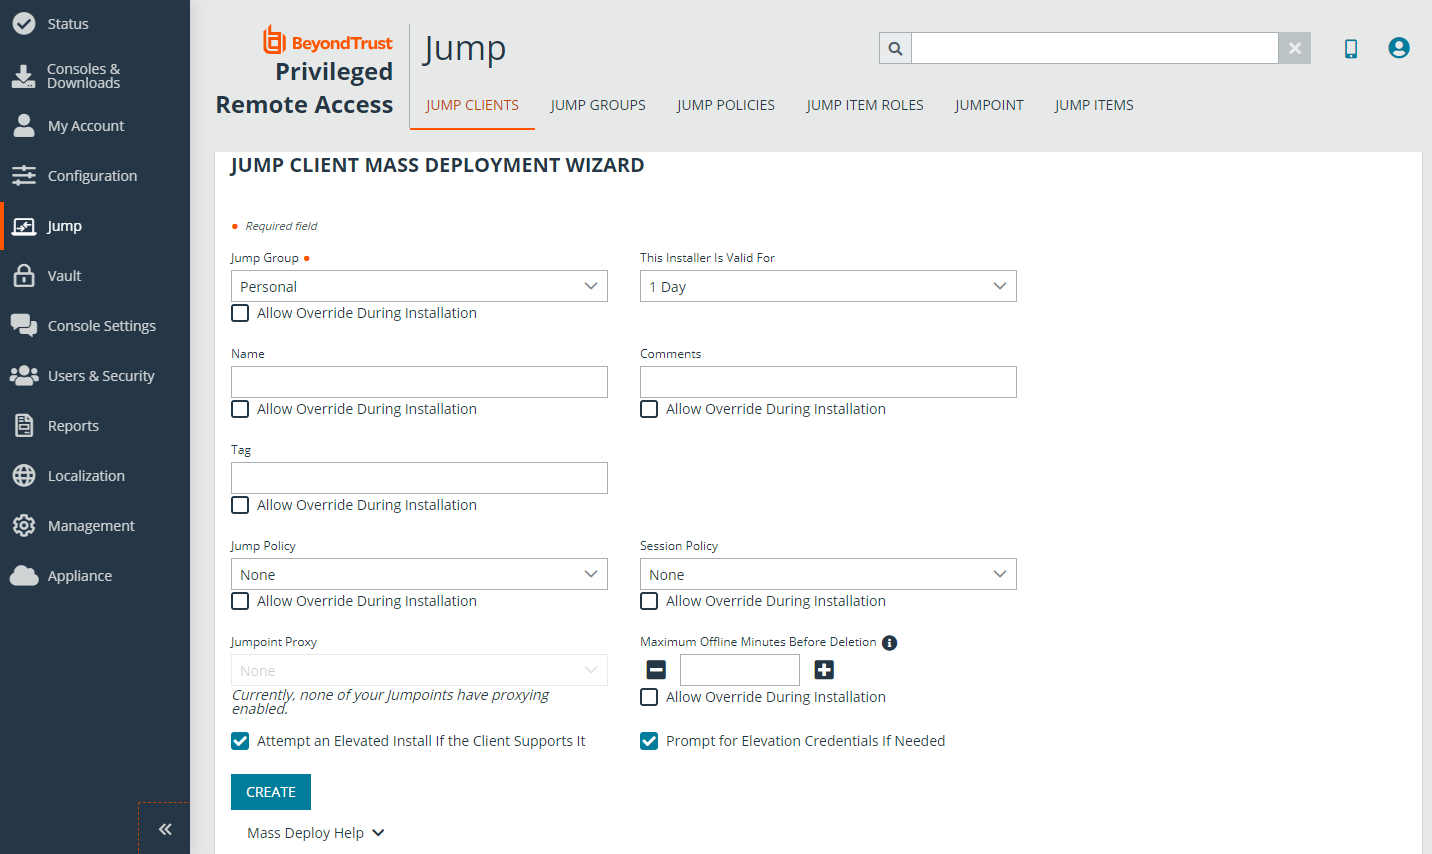 Jump Client Mass Deployment Wizard options. 